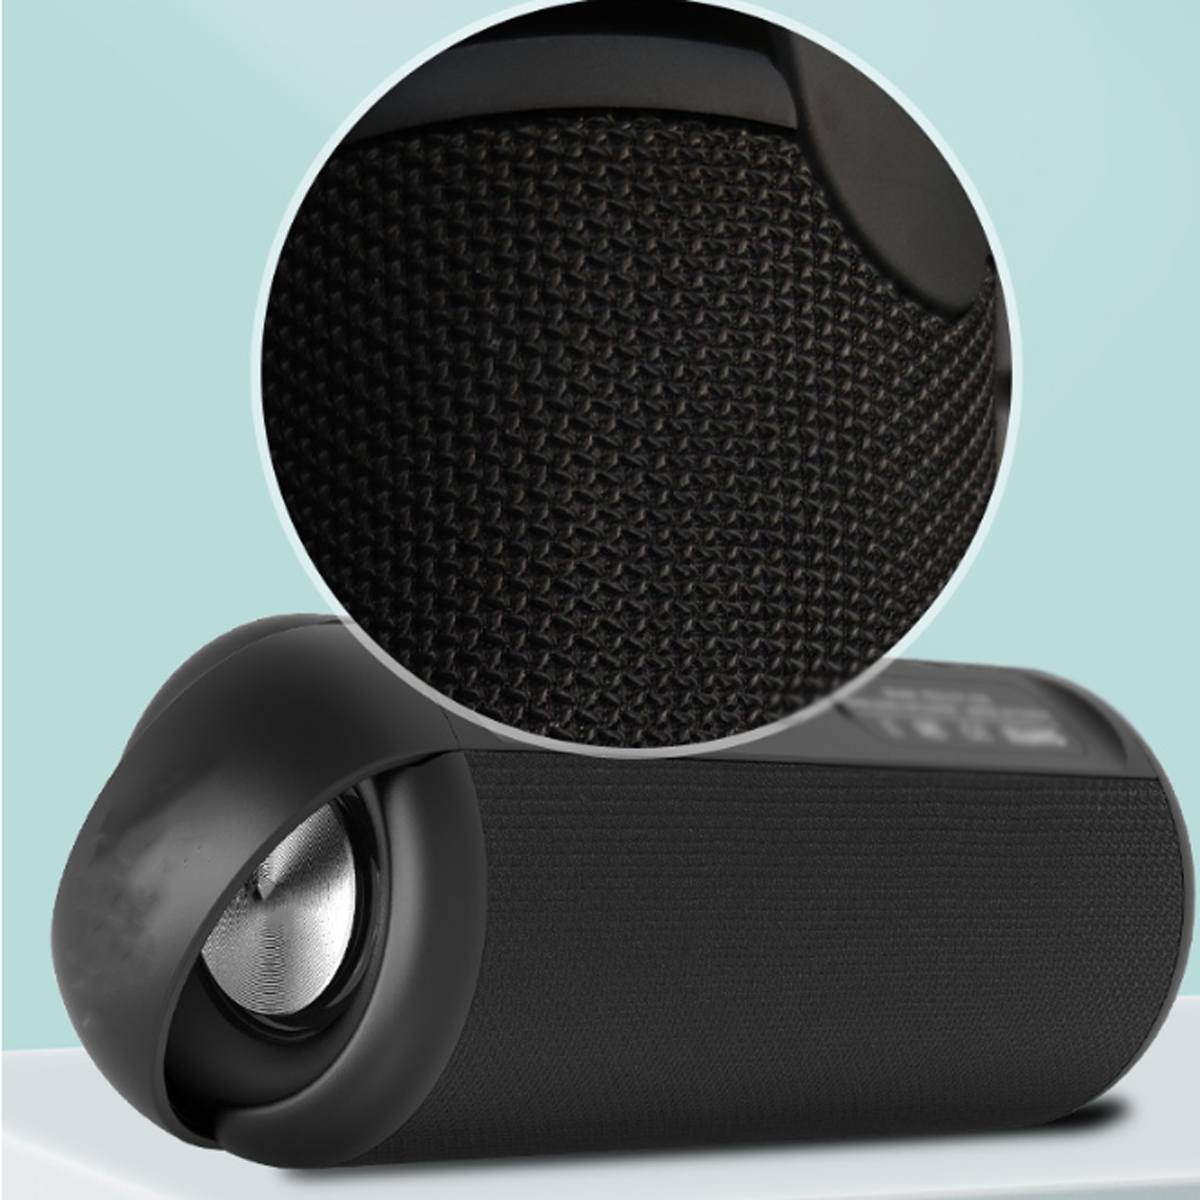 ENBAOXIN Bluetooth-Lautsprecher, HIFI-Subwoofer, Leistungsstark, Wasserdicht und Bluetooth-Lautsprecher, Wasserfest Tragbar Blau